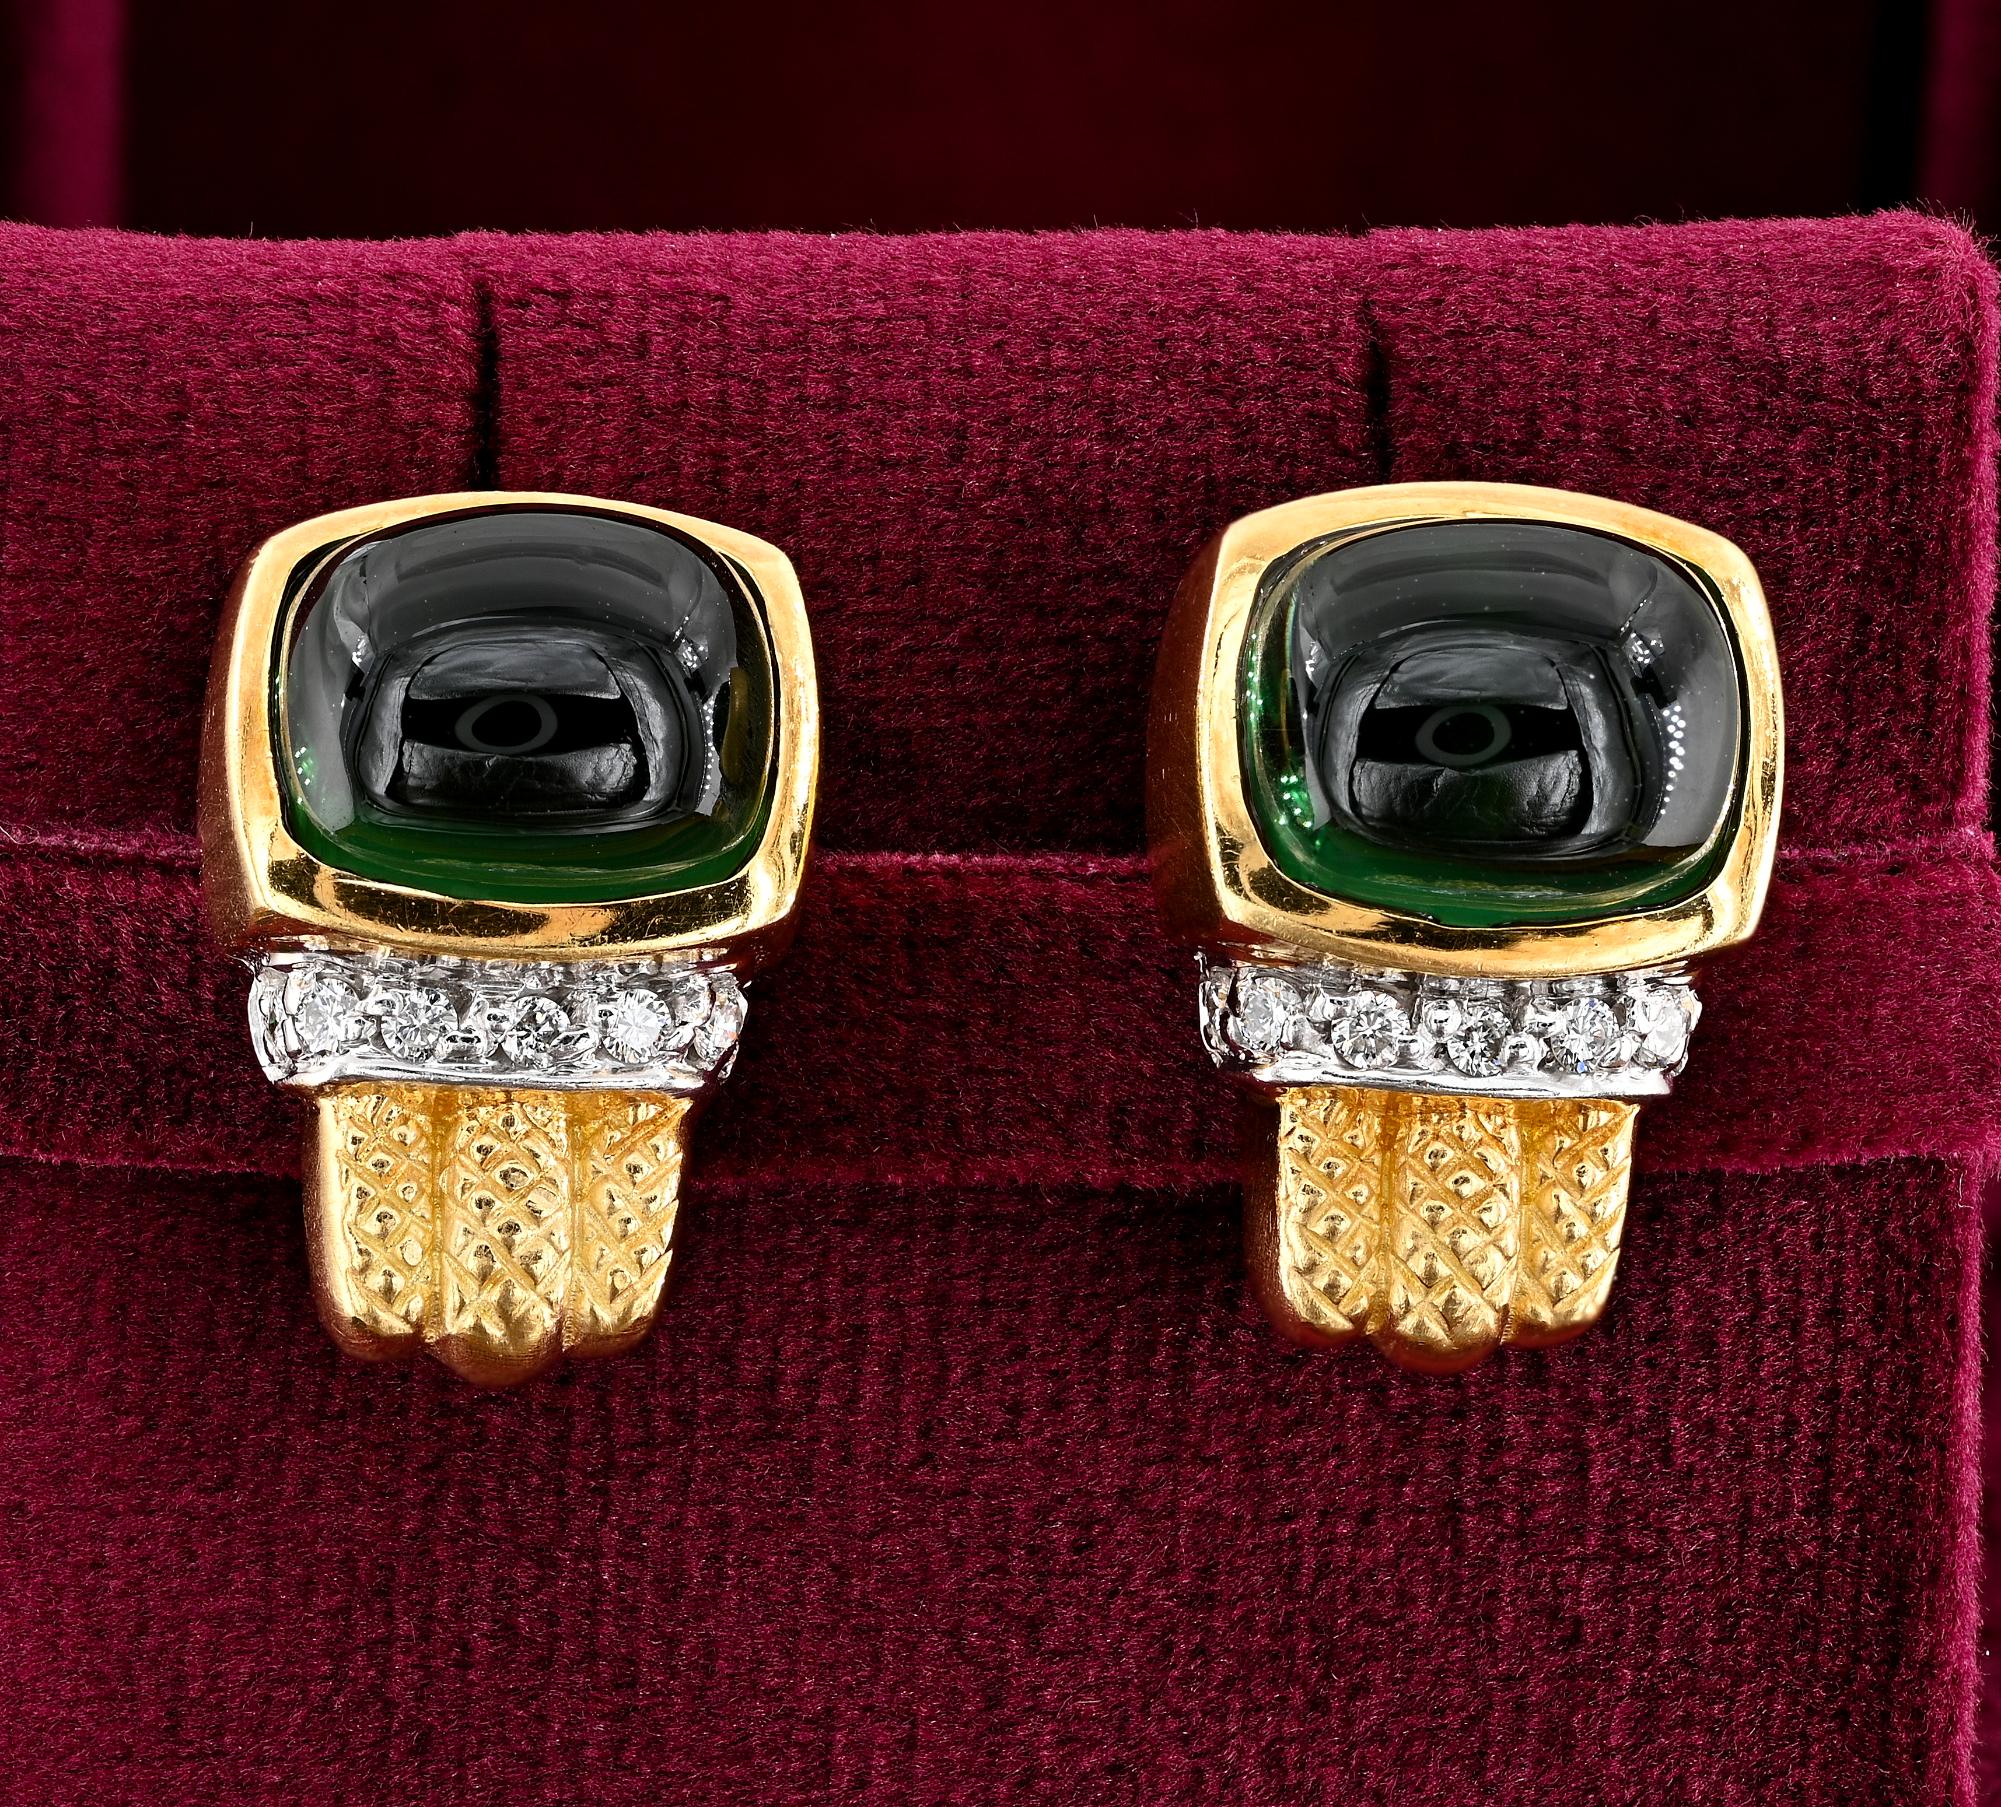 Tres Chic
Hervorragende Vintage-Ohrringe aus den 60'/70'ern
Unverwechselbares schickes Design und dynamischer zeitloser Stil
im Wesentlichen handgefertigt aus massivem 14 Kt Gelbgold, markiert
In der Mitte zwei atemberaubende natürliche,